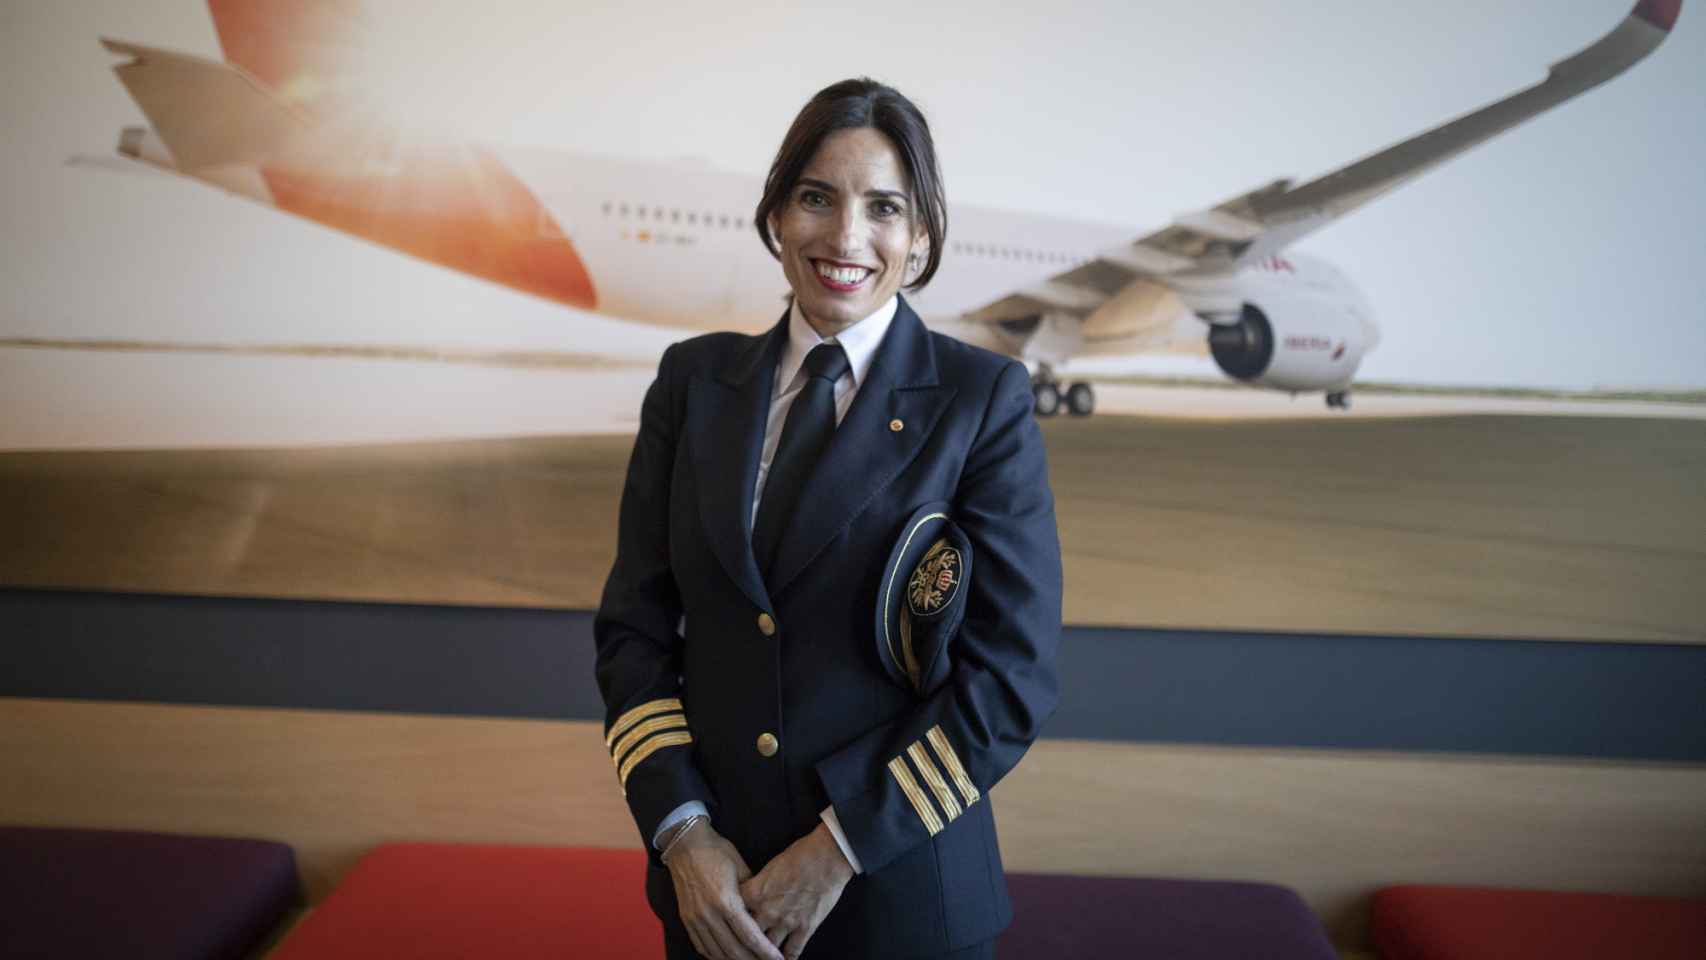 Lucía Aranega, piloto.